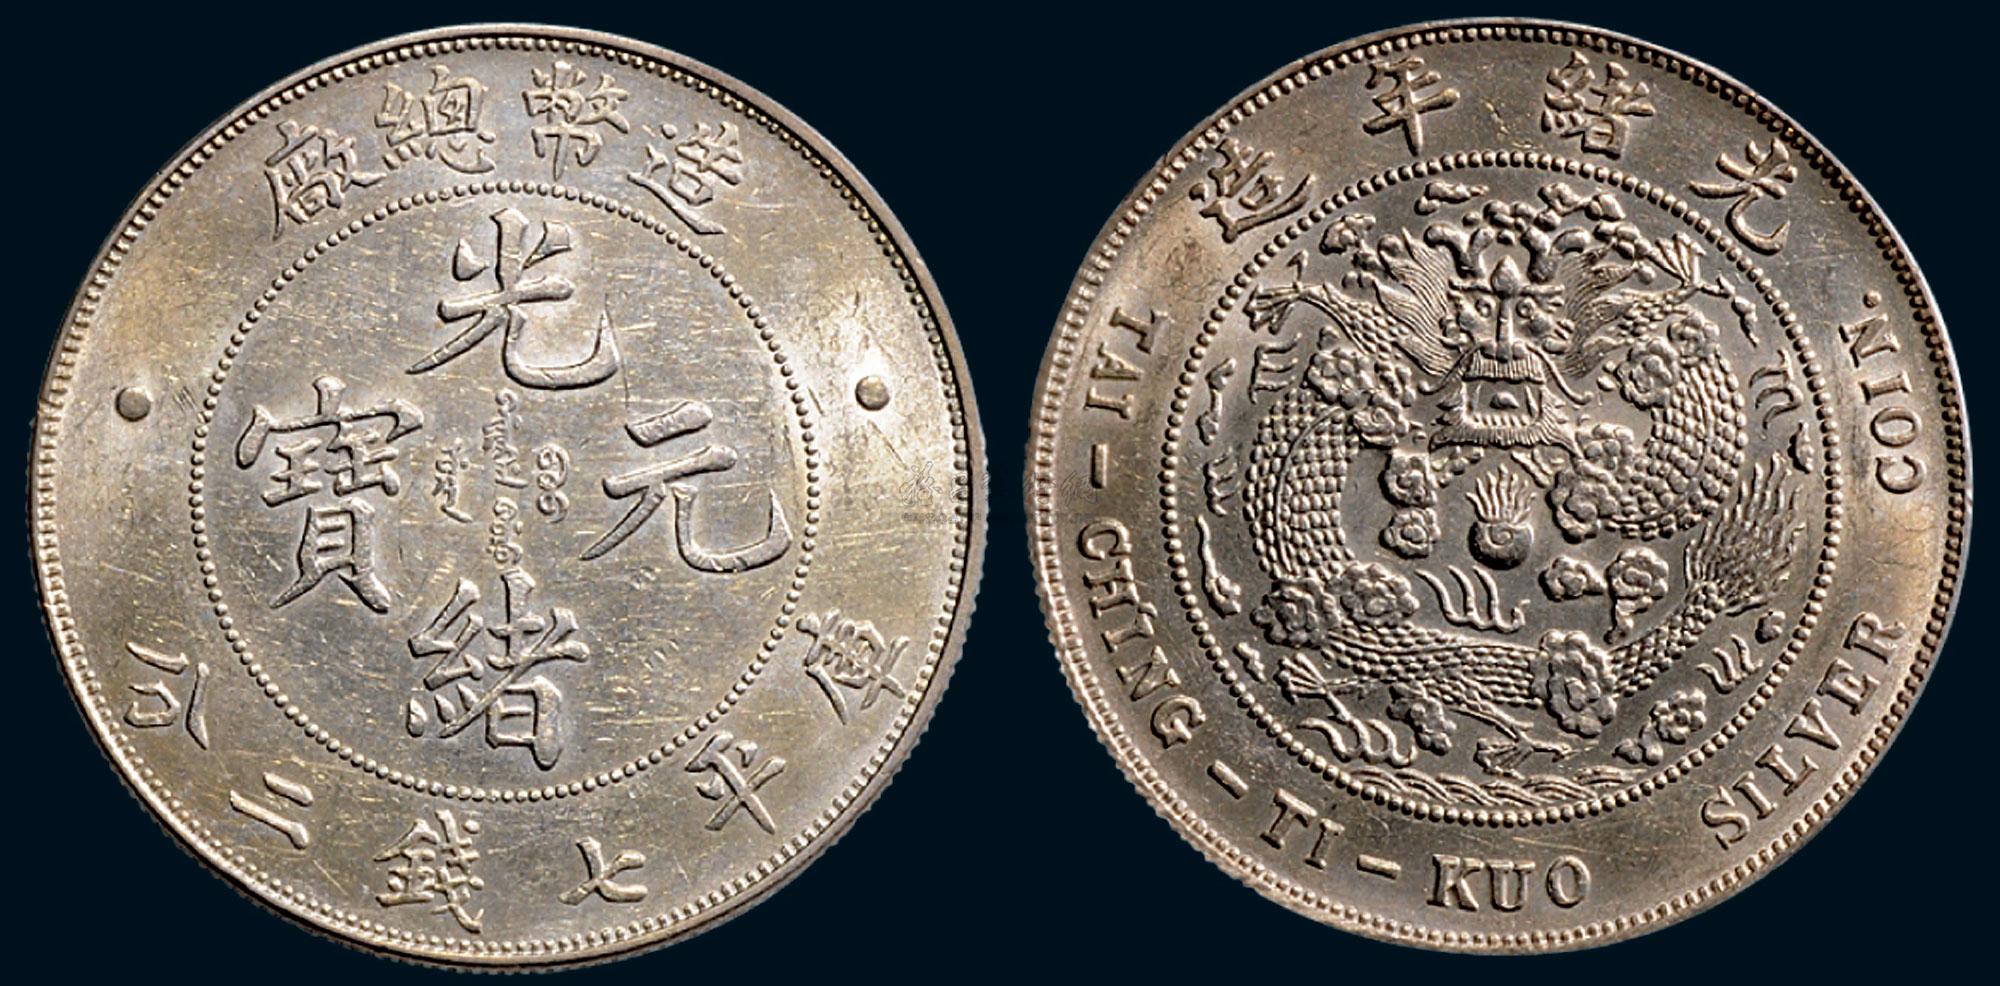 龙洋 大清银币银元 白铜银元 宣统三年壹圆 曲须龙直径3.9CM-阿里巴巴